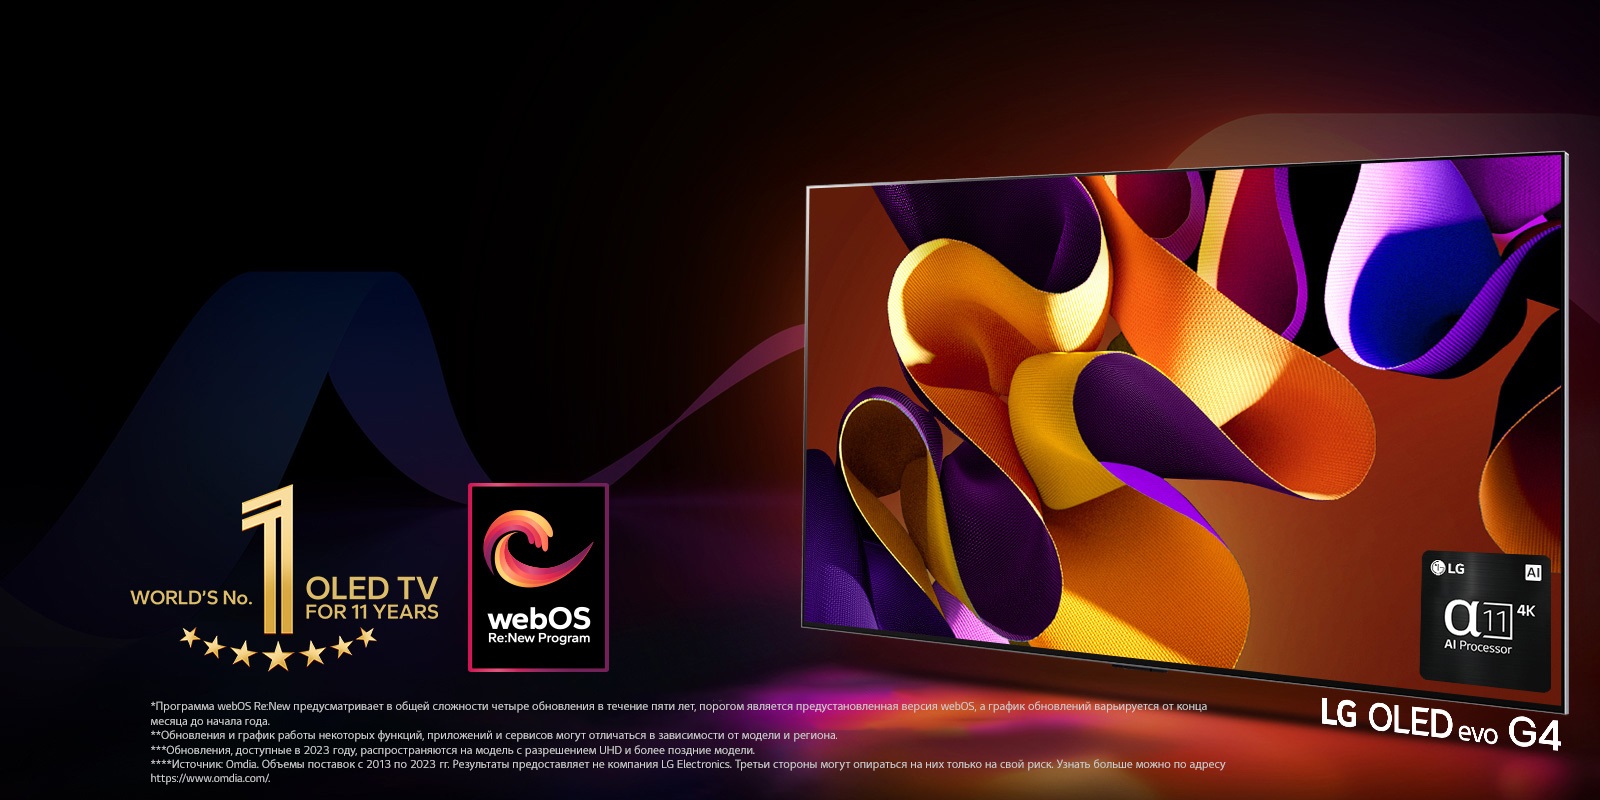 Телевизор LG OLED evo G4 с абстрактной яркой картинкой на экране на черном фоне с едва различимыми цветными завихрениями. Экран излучает свет, отбрасывая красочные тени. В нижнем правом углу экрана телевизора изображен процессор alpha 11 AI 4K. На изображении эмблема «Телевизор OLED № 1 в мире за 11 лет» и логотип webOS Re:New Program. Сообщение об отказе от ответственности: «Программа webOS Re:New предусматривает в общей сложности четыре обновления в течение пяти лет, порогом является предустановленная версия webOS, а график обновлений варьируется от конца месяца до начала года.»  «Обновления и график работы некоторых функций, приложений и сервисов могут отличаться в зависимости от модели и региона.»  «Обновления, доступные в 2023 году, распространяются на модель с разрешением UHD и более поздние модели.» «Источник: Omdia. Объемы поставок с 2013 по 2023 гг. Результаты предоставляет не компания LG Electronics. Третьи стороны могут опираться на них только на свой риск. Узнать больше можно по адресу https://www.omdia.com/».